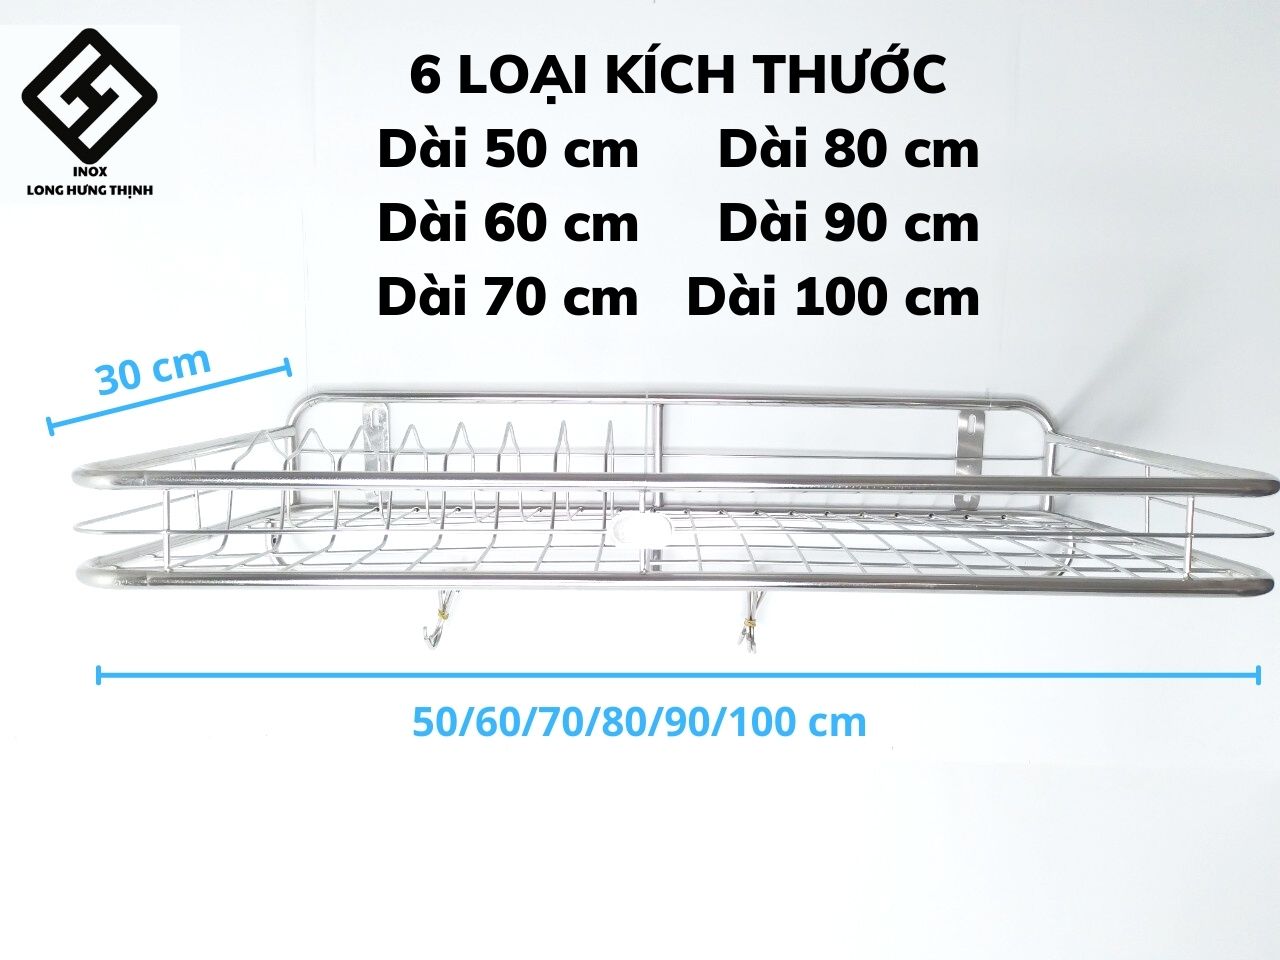 Kệ treo phòng bếp INOX cao cấp 1 tầng (có sóng đĩa), bề mặt sáng bóng, không hoen gỉ, dụng cụ nhà bếp tiện lợi, đủ loại kích thước (30x50, 30x60, 30x70, 30x80, 30x90, 30x100) cm